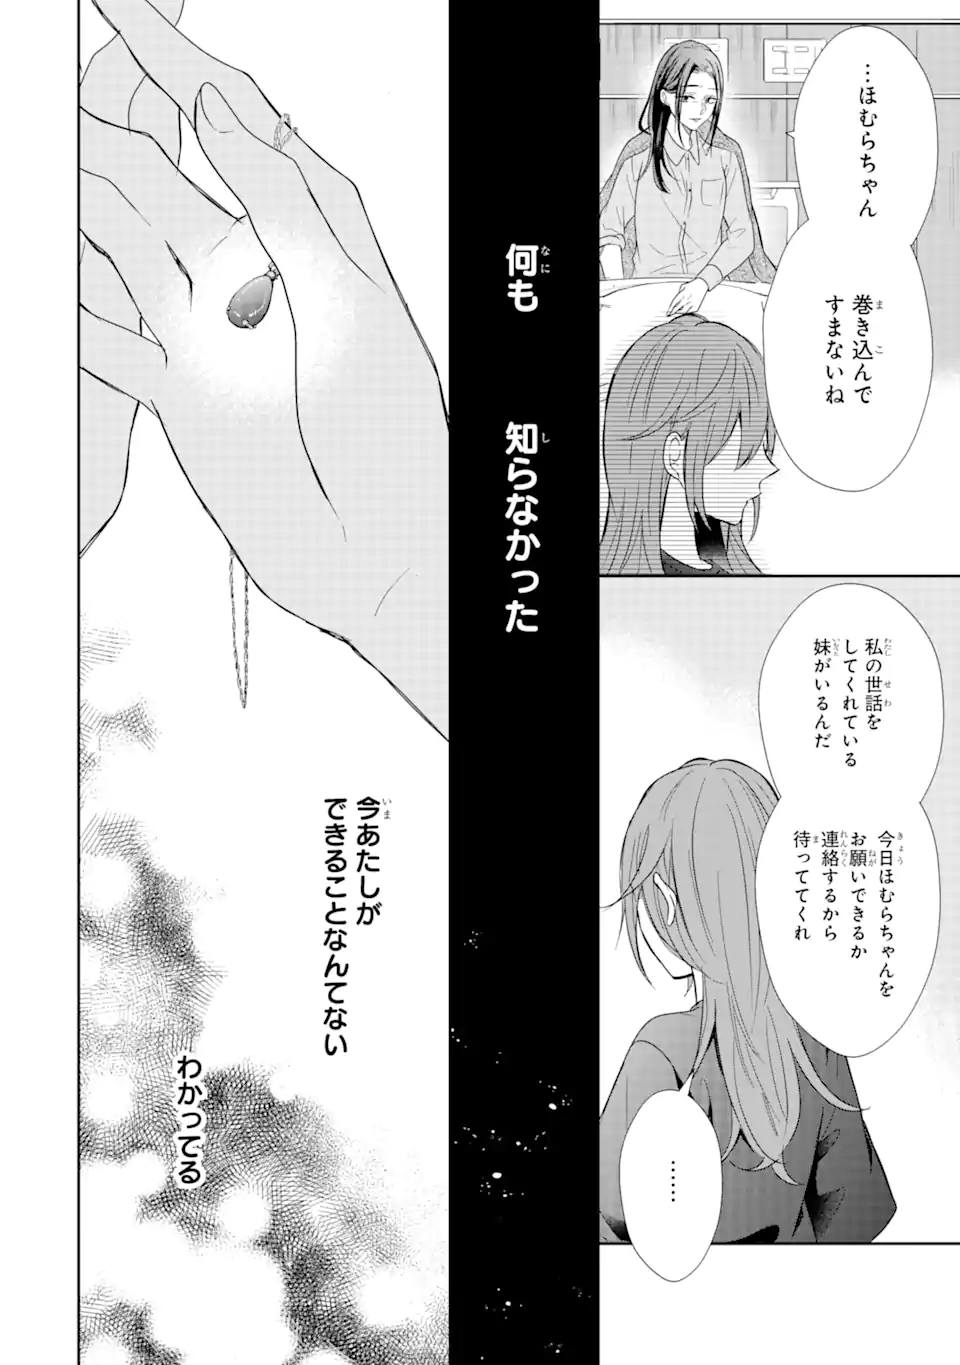 Keisatsu 3 Kyoudai wa Furyou Shoujo ni Amasugiru - Chapter 16.3 - Page 8